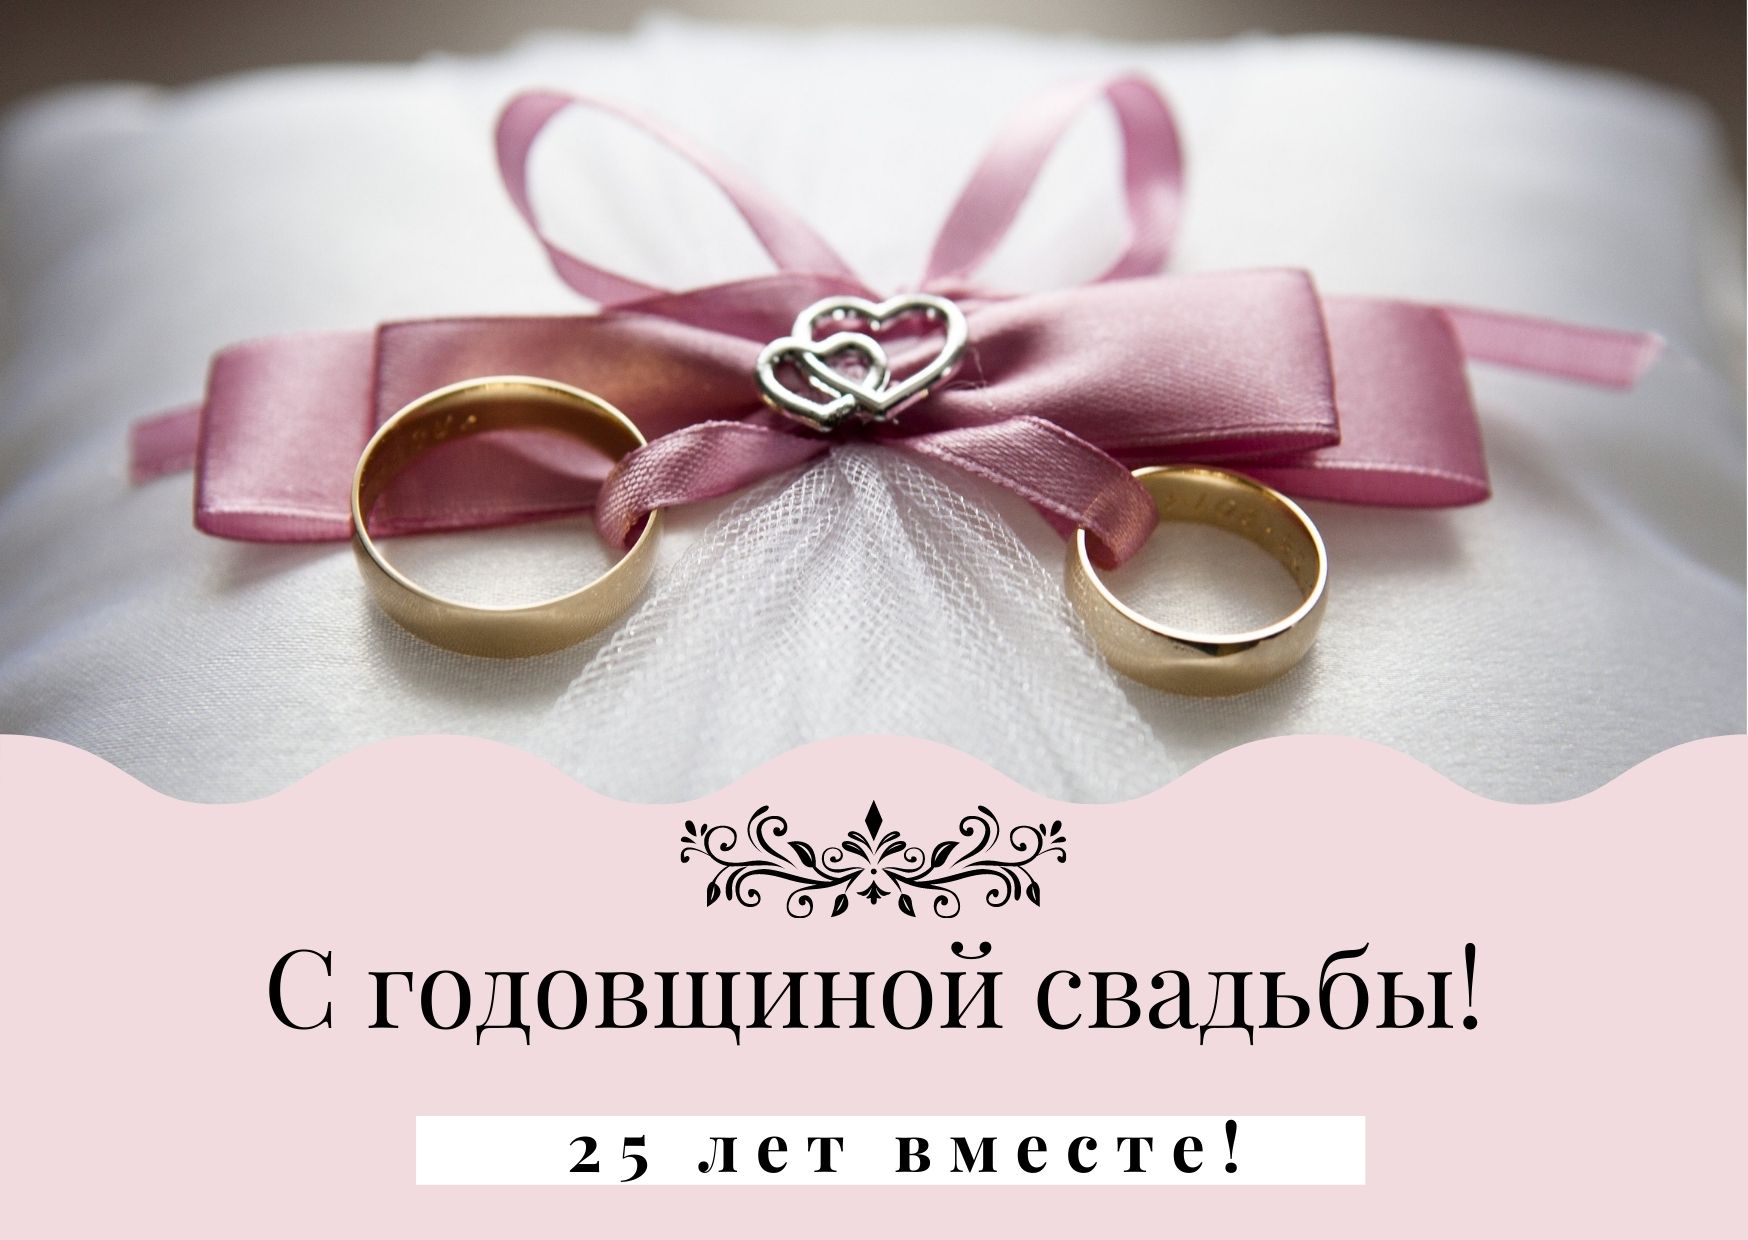 Серебряная свадьба - 25 лет